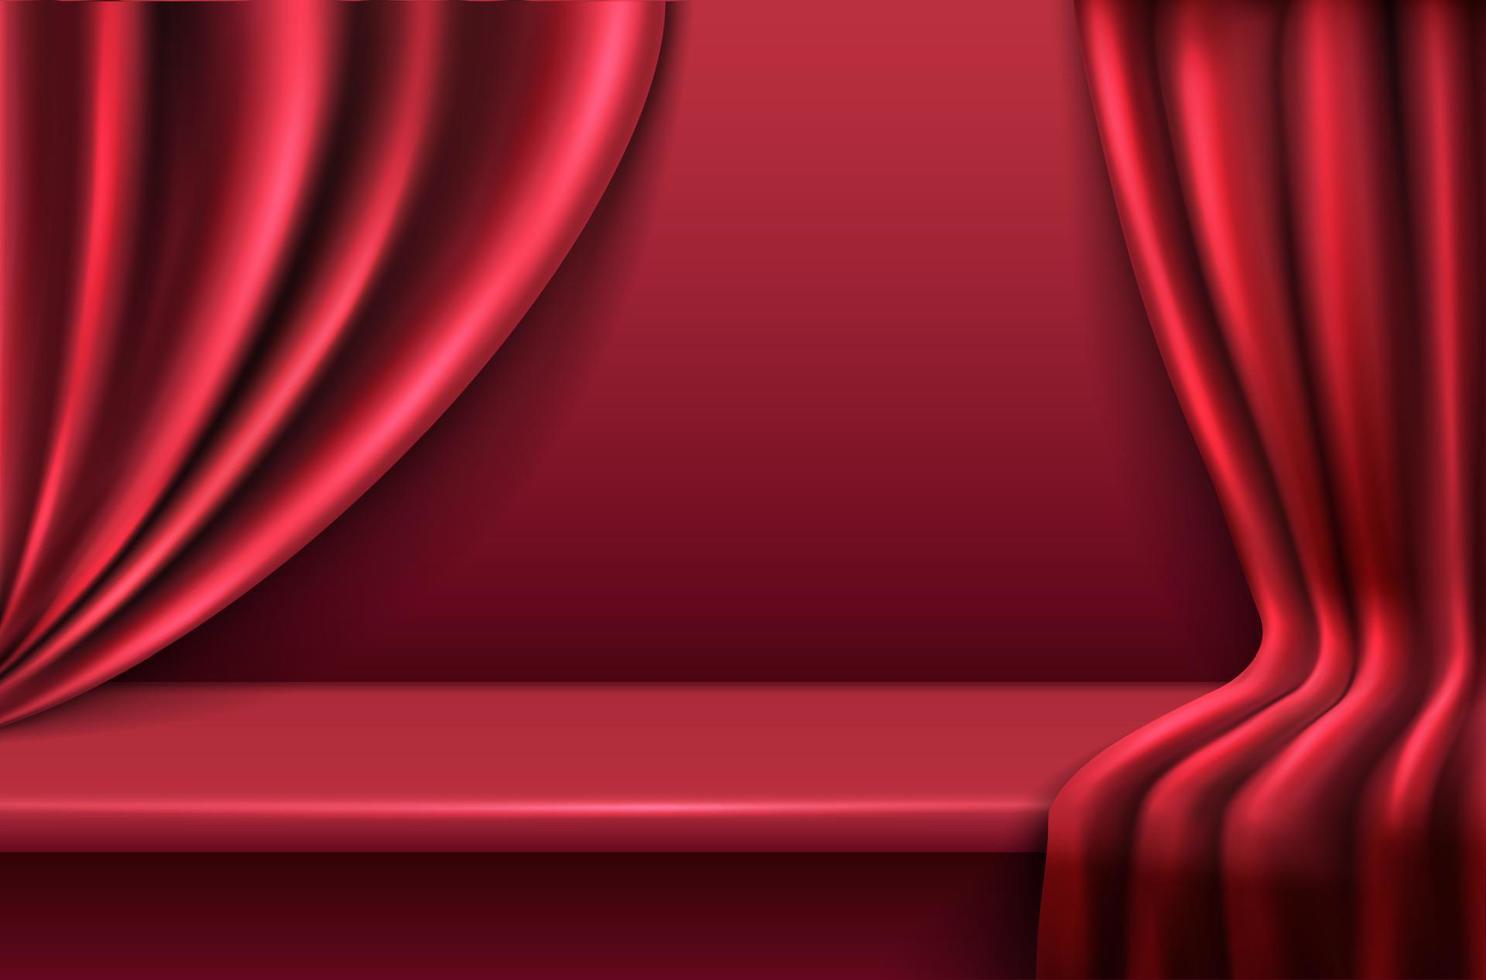 Fundo de veludo vermelho vetor realista 3D com cortinas de cortinas onduladas.